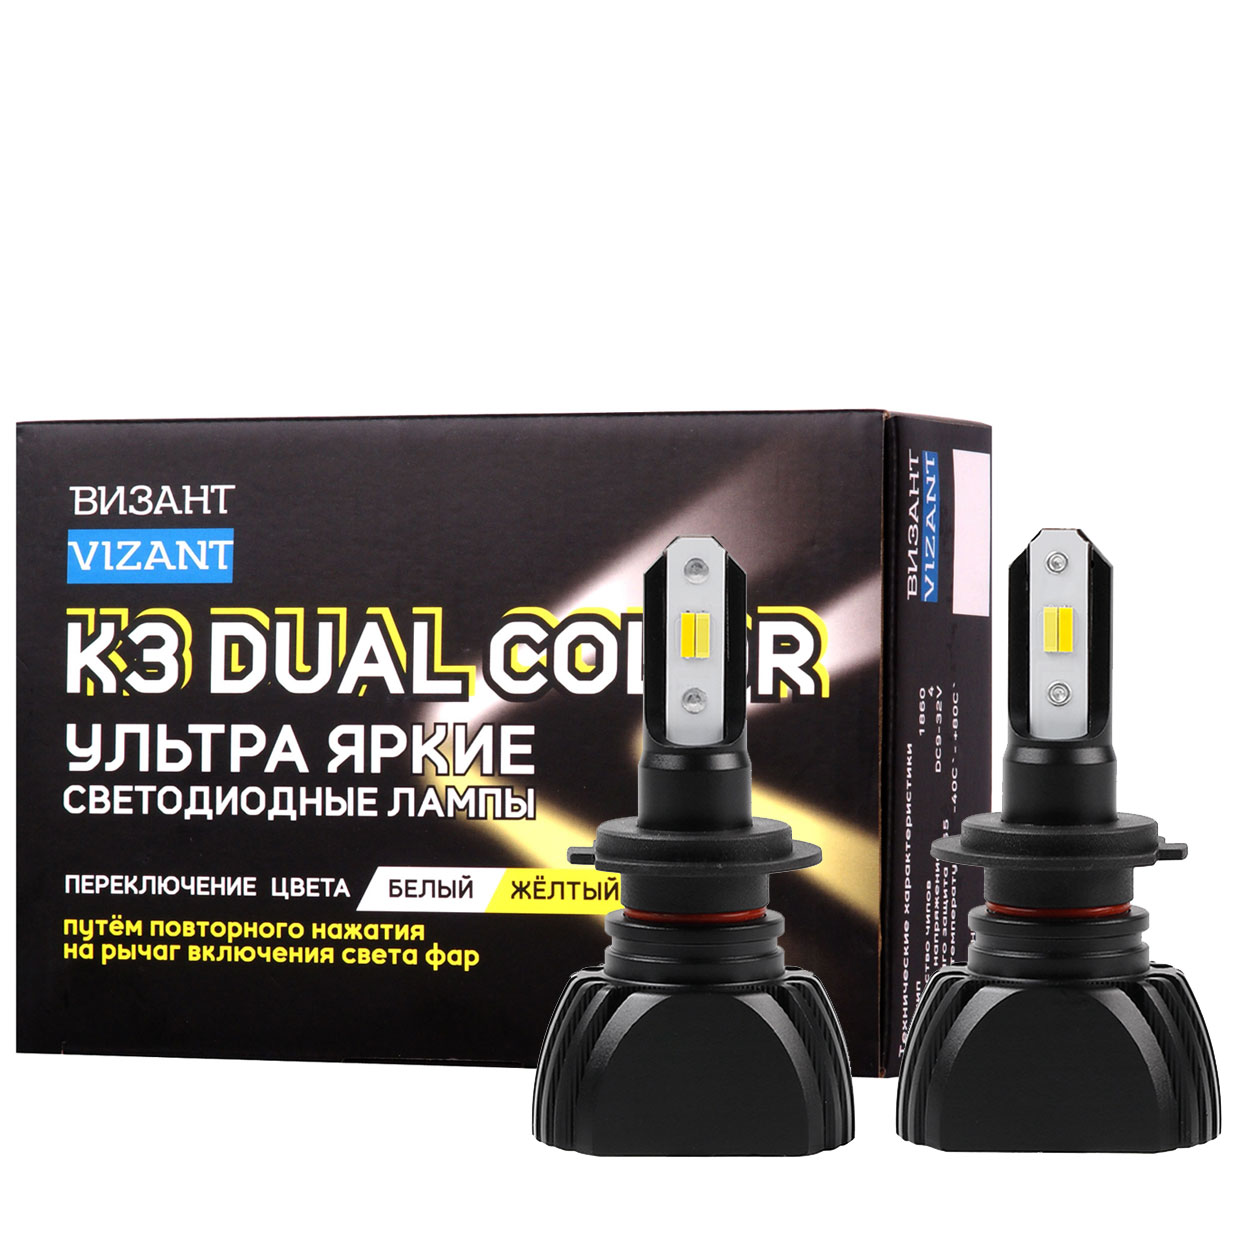   Vizant K3 DUAL COLOR  H7   CSP 1860 4600lm 5000/2600K (2 .) 